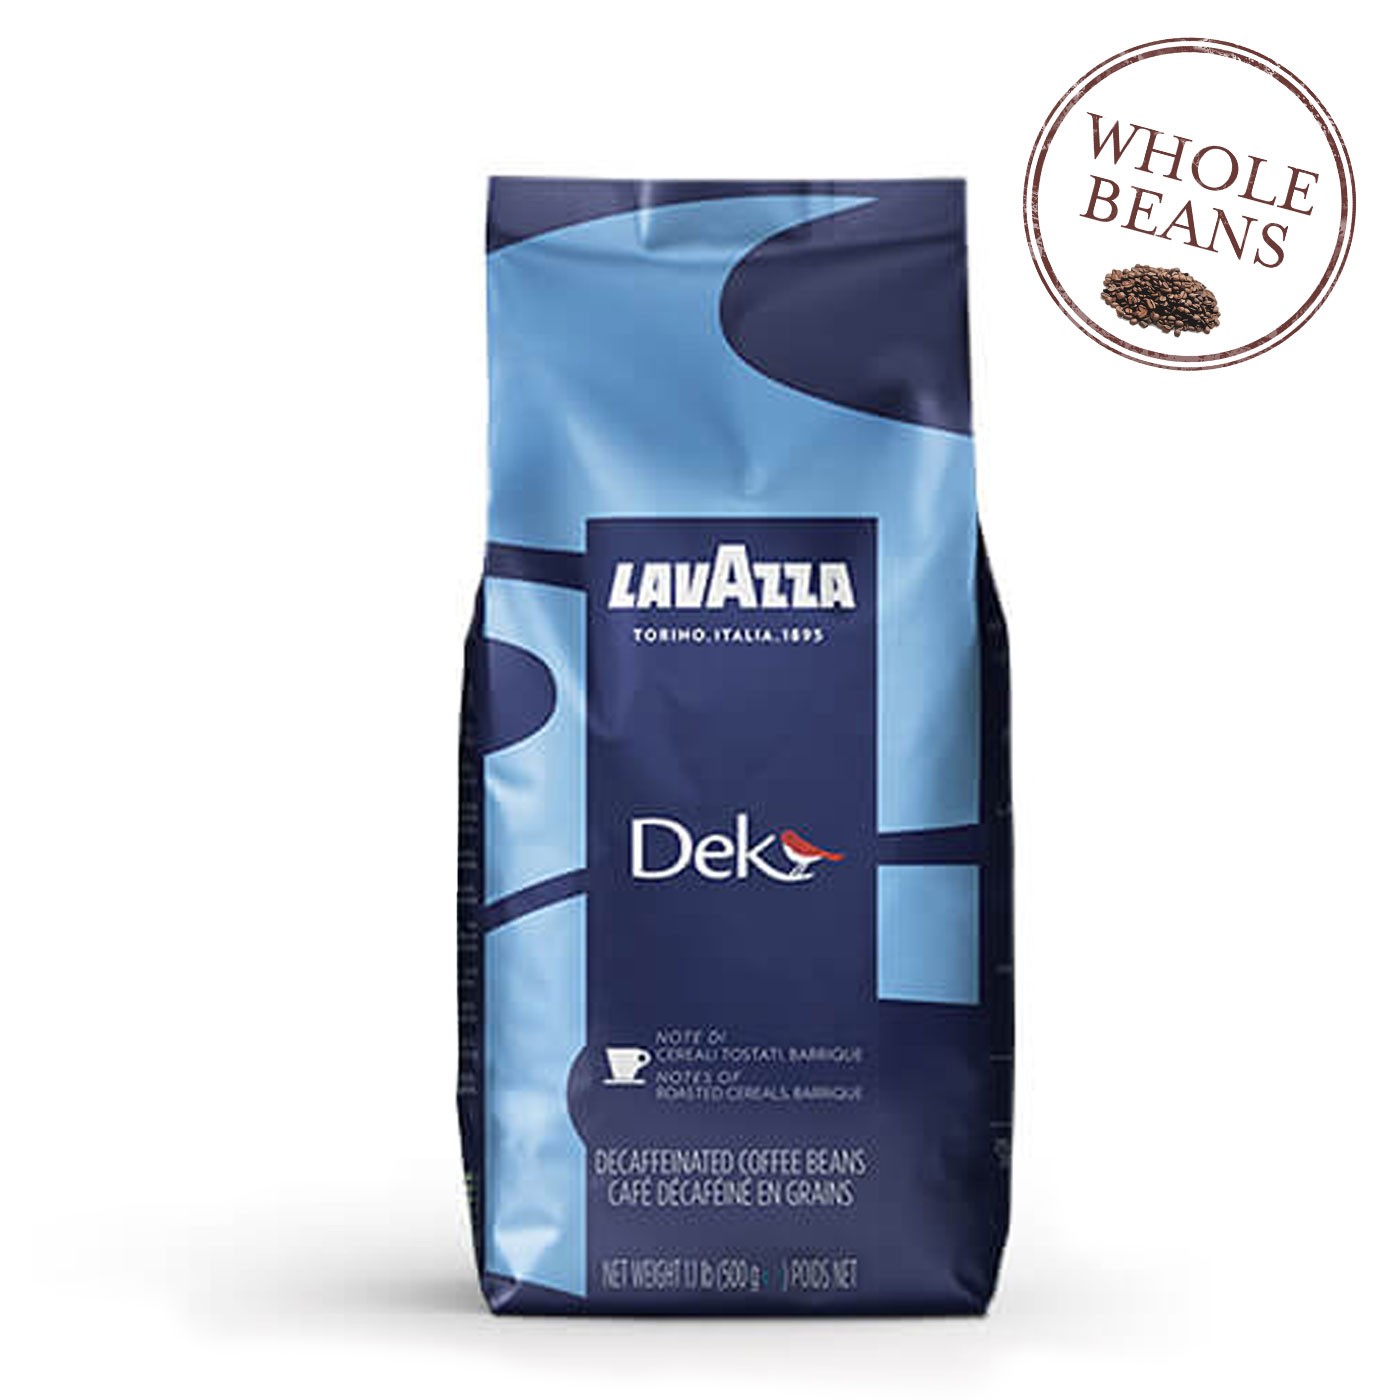 Dek Decaf Coffee 1.1LB